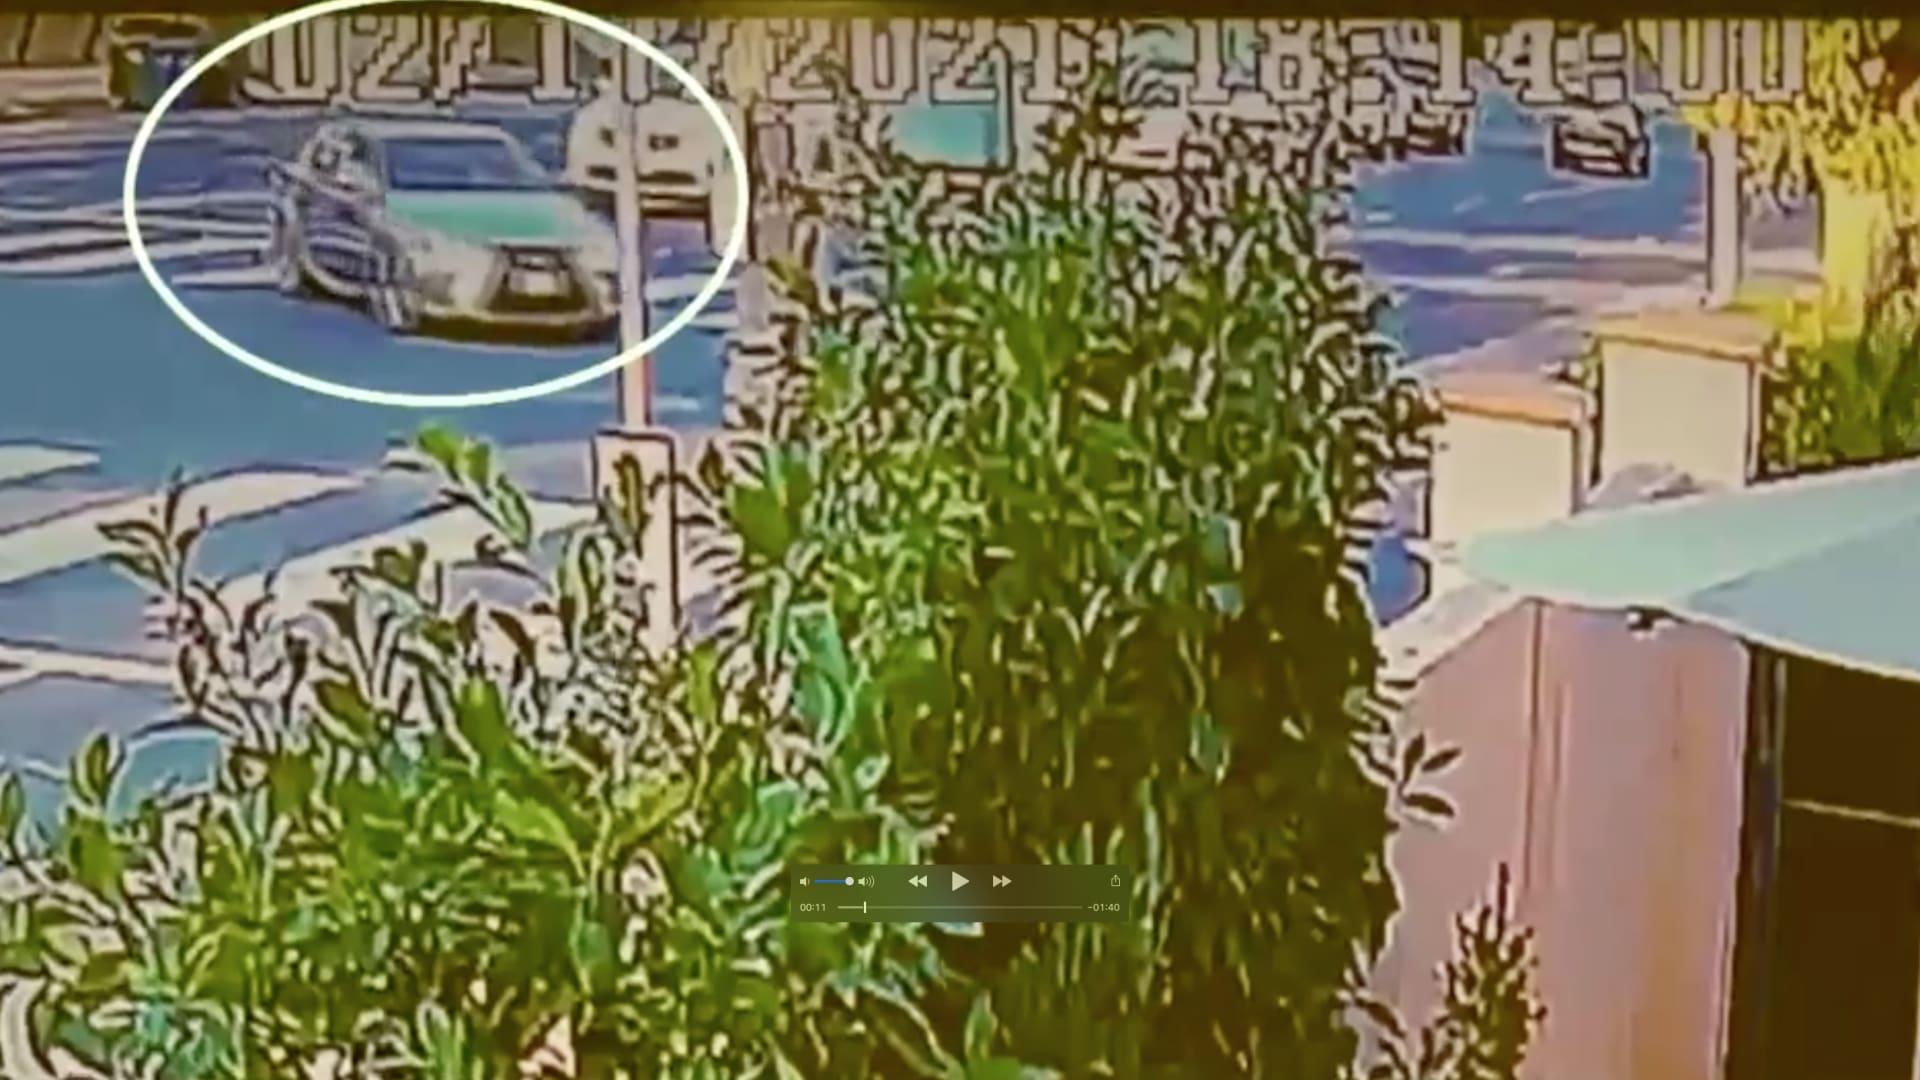 فيديو يظهر سيارة لامبورغيني مسرعة تقطع إشارة حمراء وتسحق مركبة أمامها